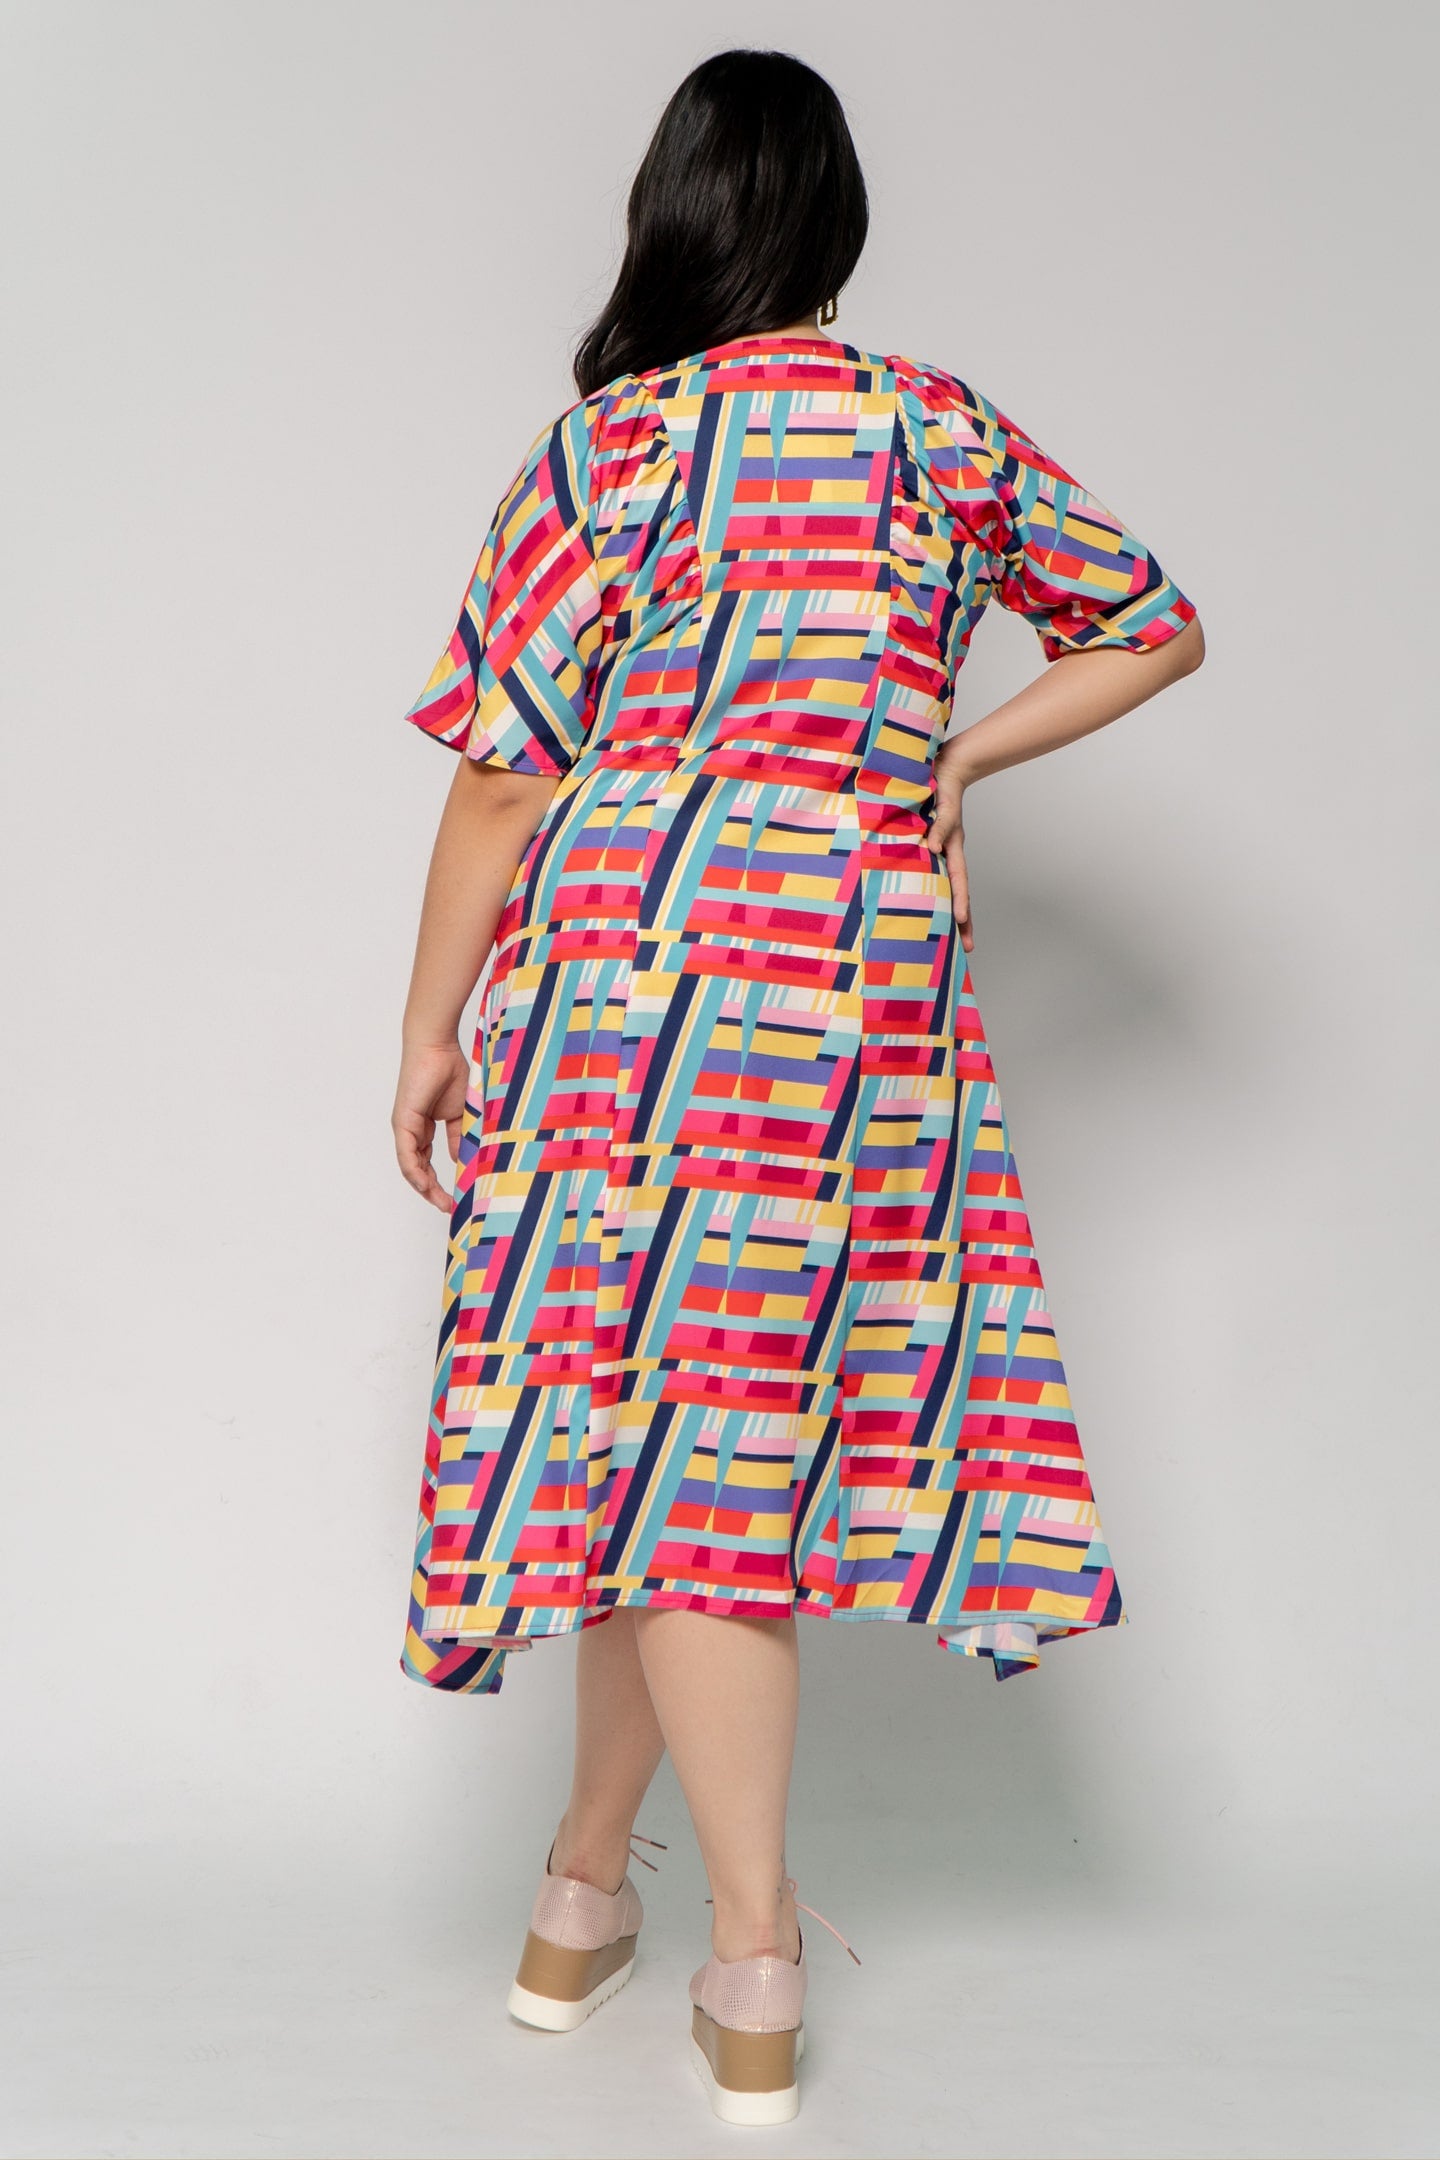 Whitney V Dress in Rainbow Geometric